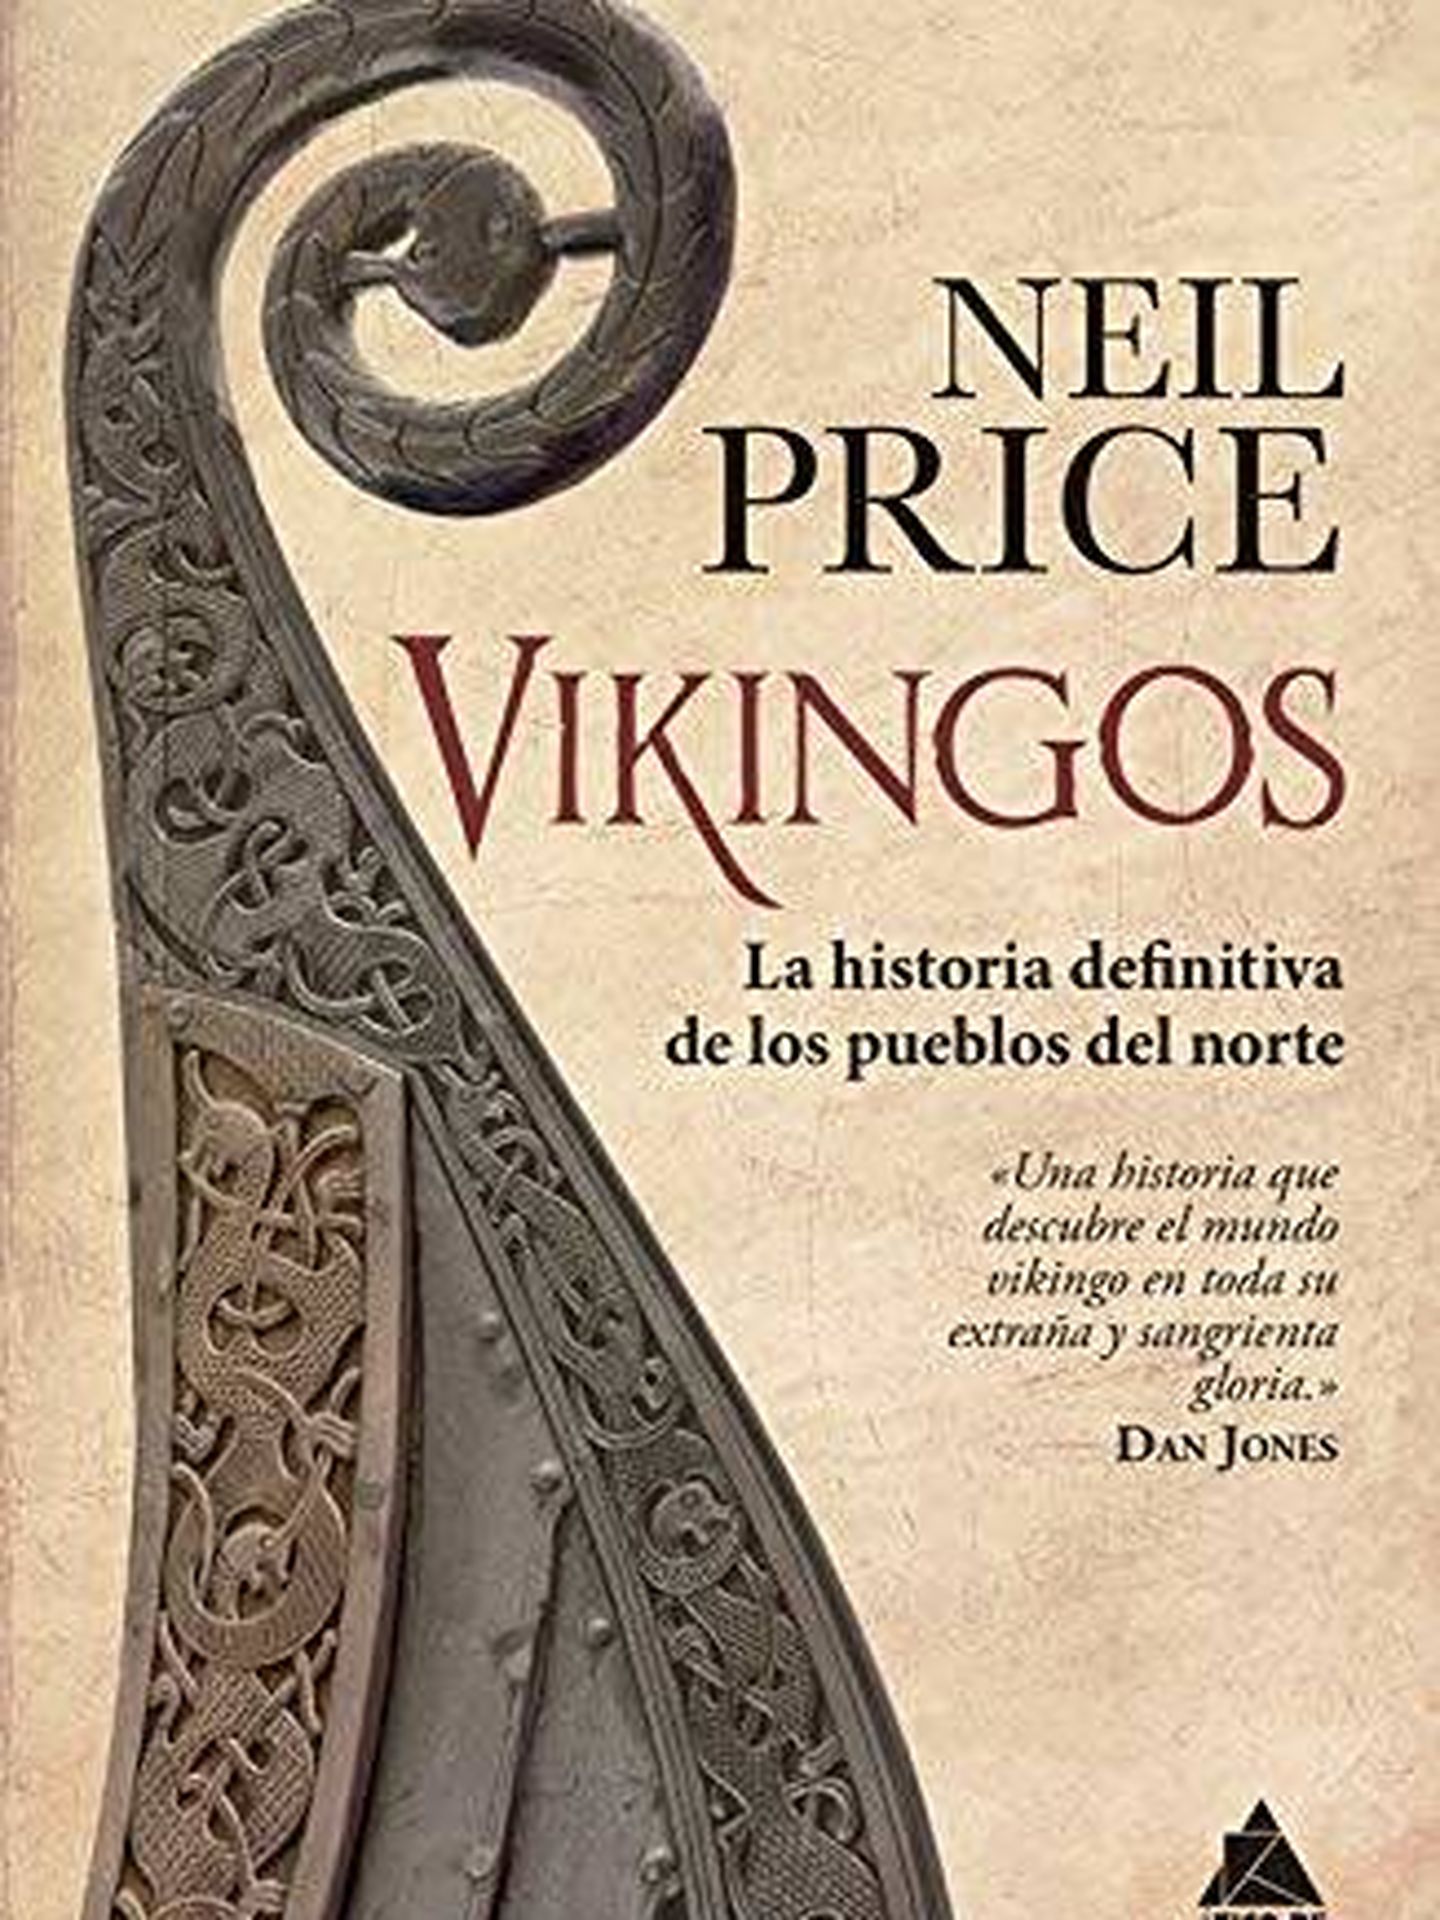 'Vikingos'. (Ático de los Libros)